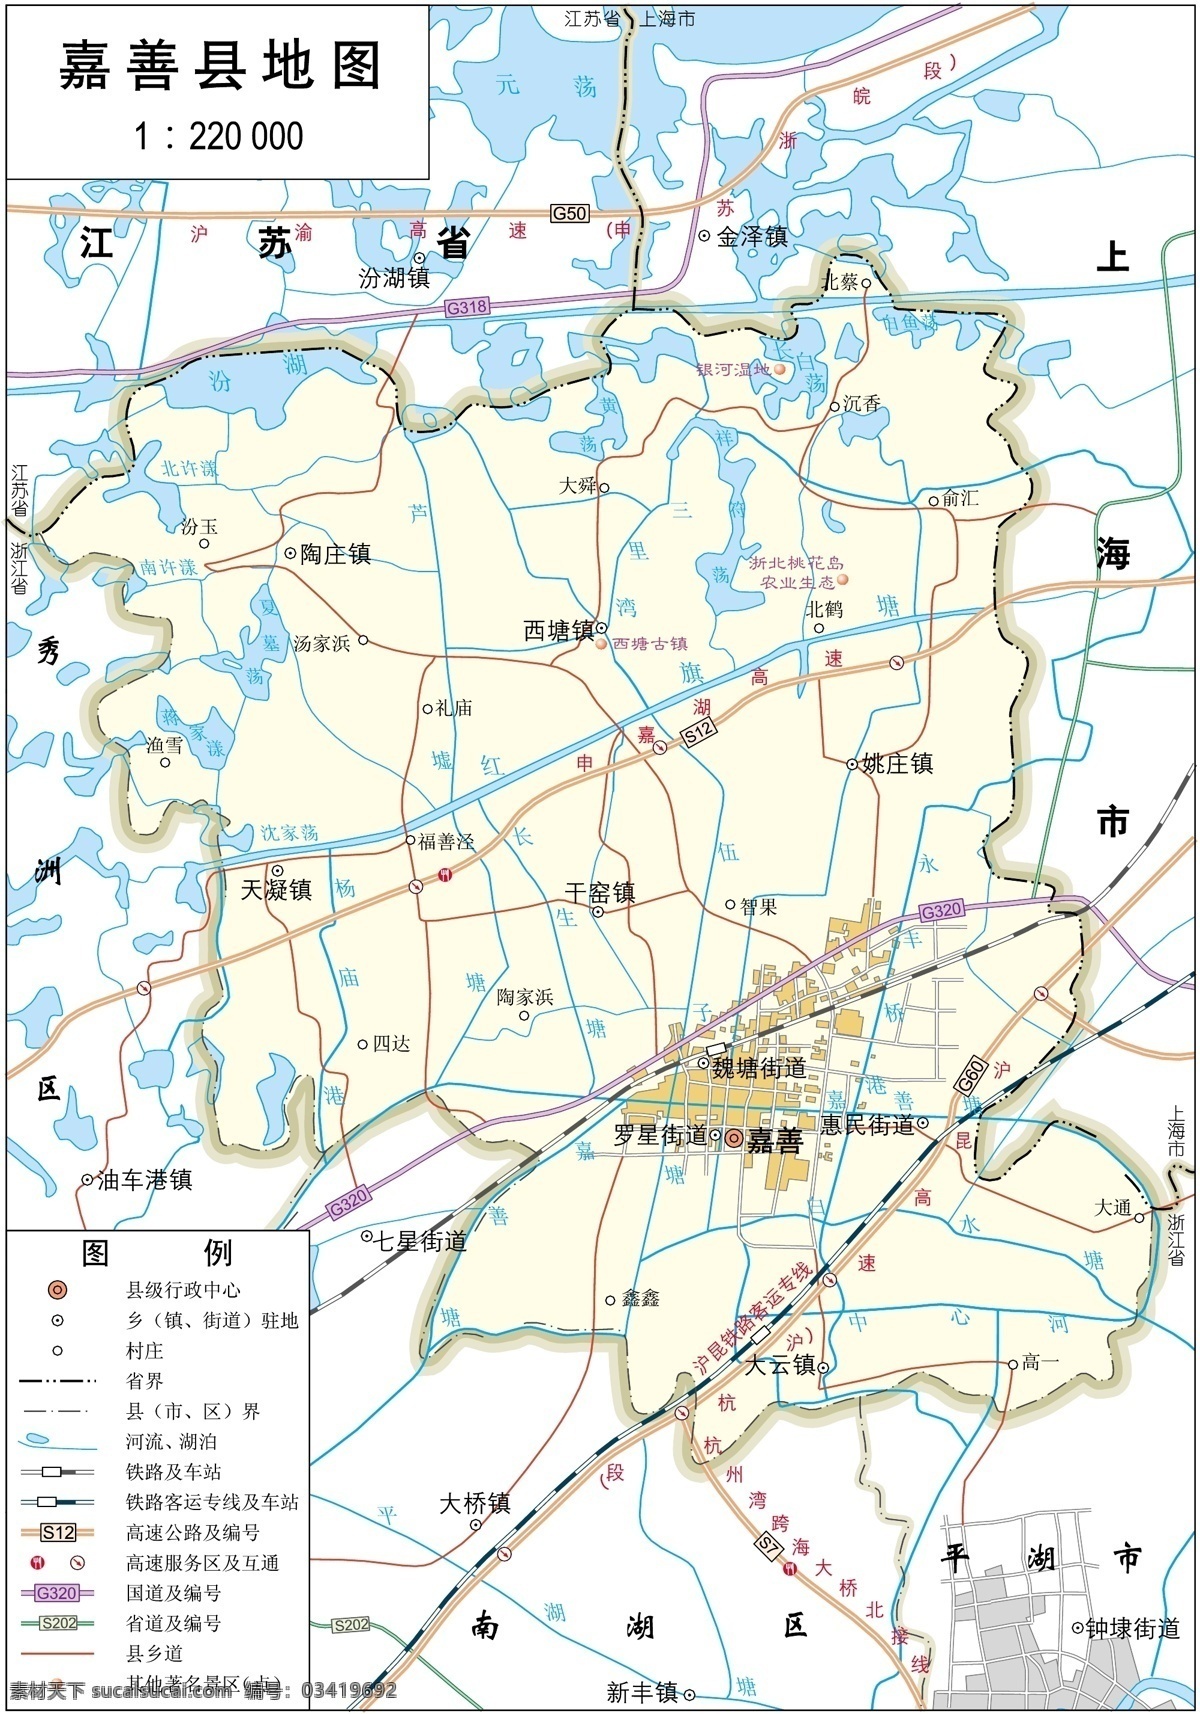 浙江 嘉兴市 嘉善县 标准 地图 32k 嘉兴市地图 标准地图 地图模板 嘉兴地图 嘉善县地图